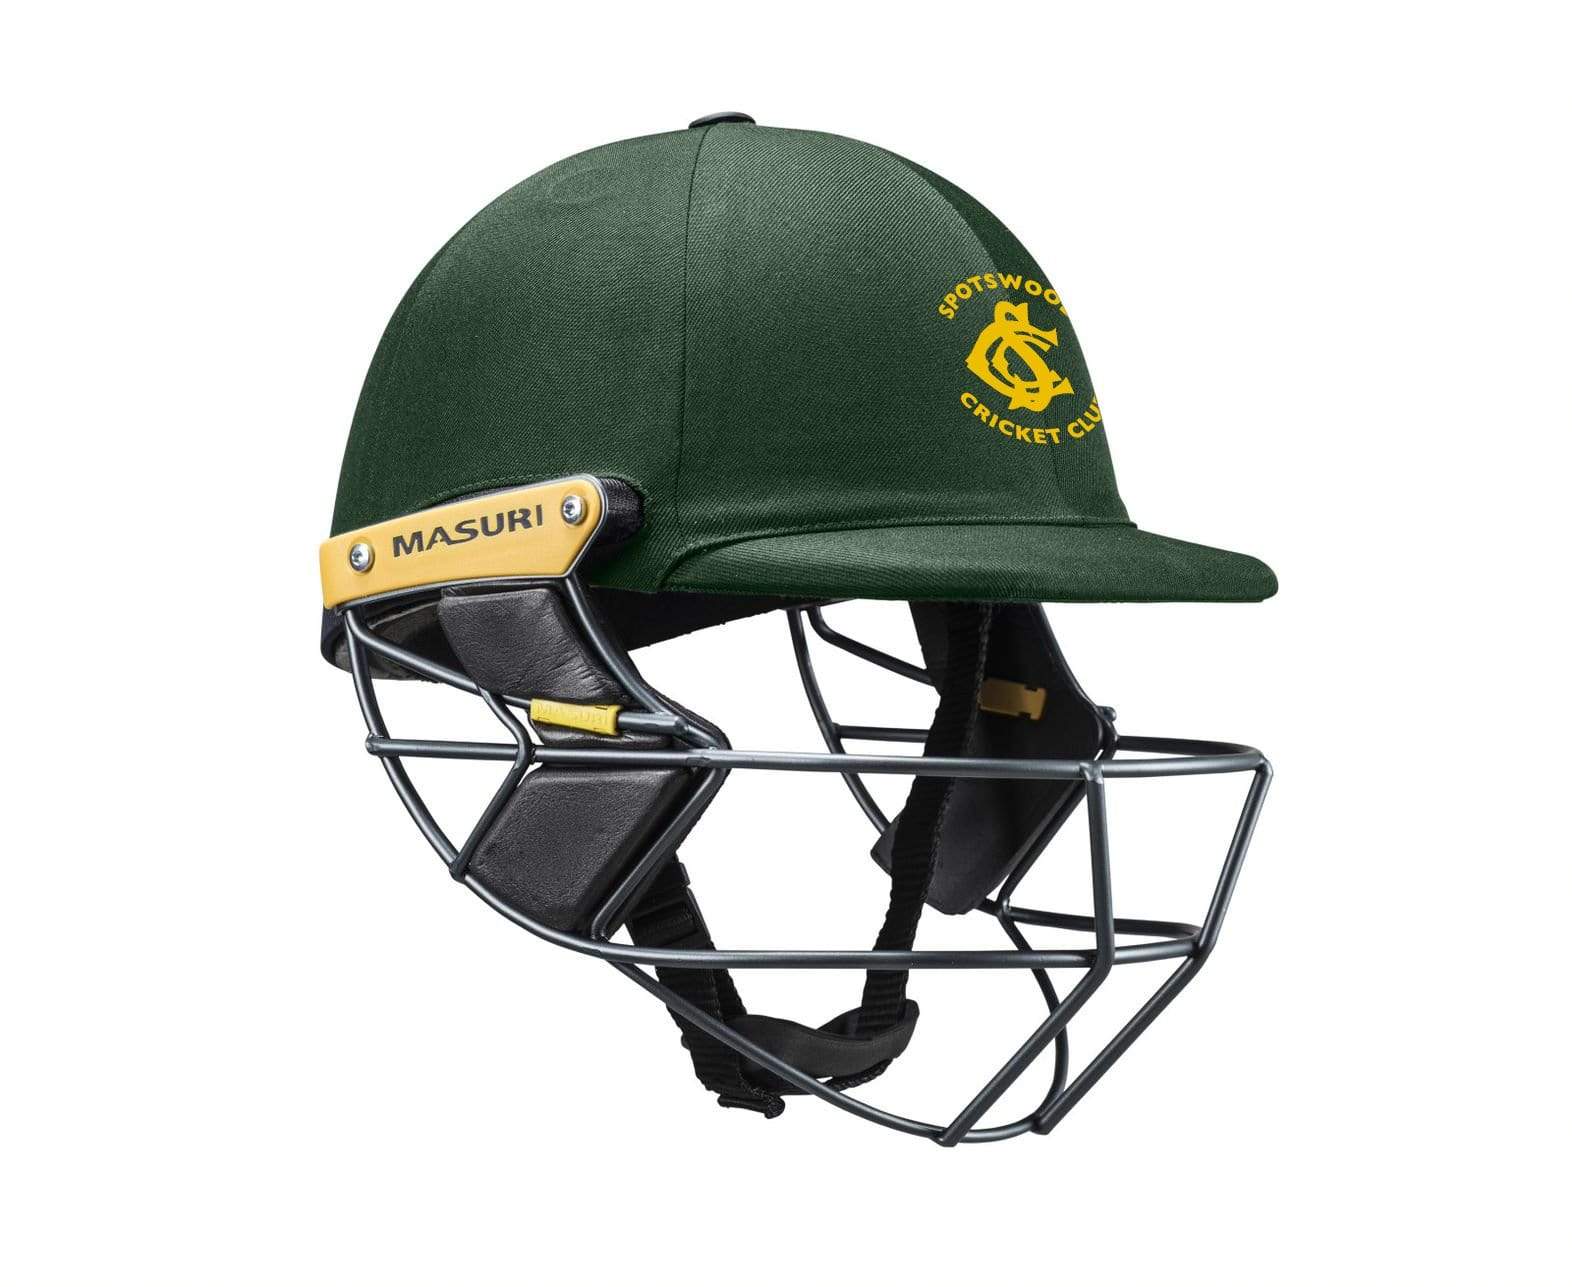 Masuri Club Helmet Spotswood Cricket Club Helmet